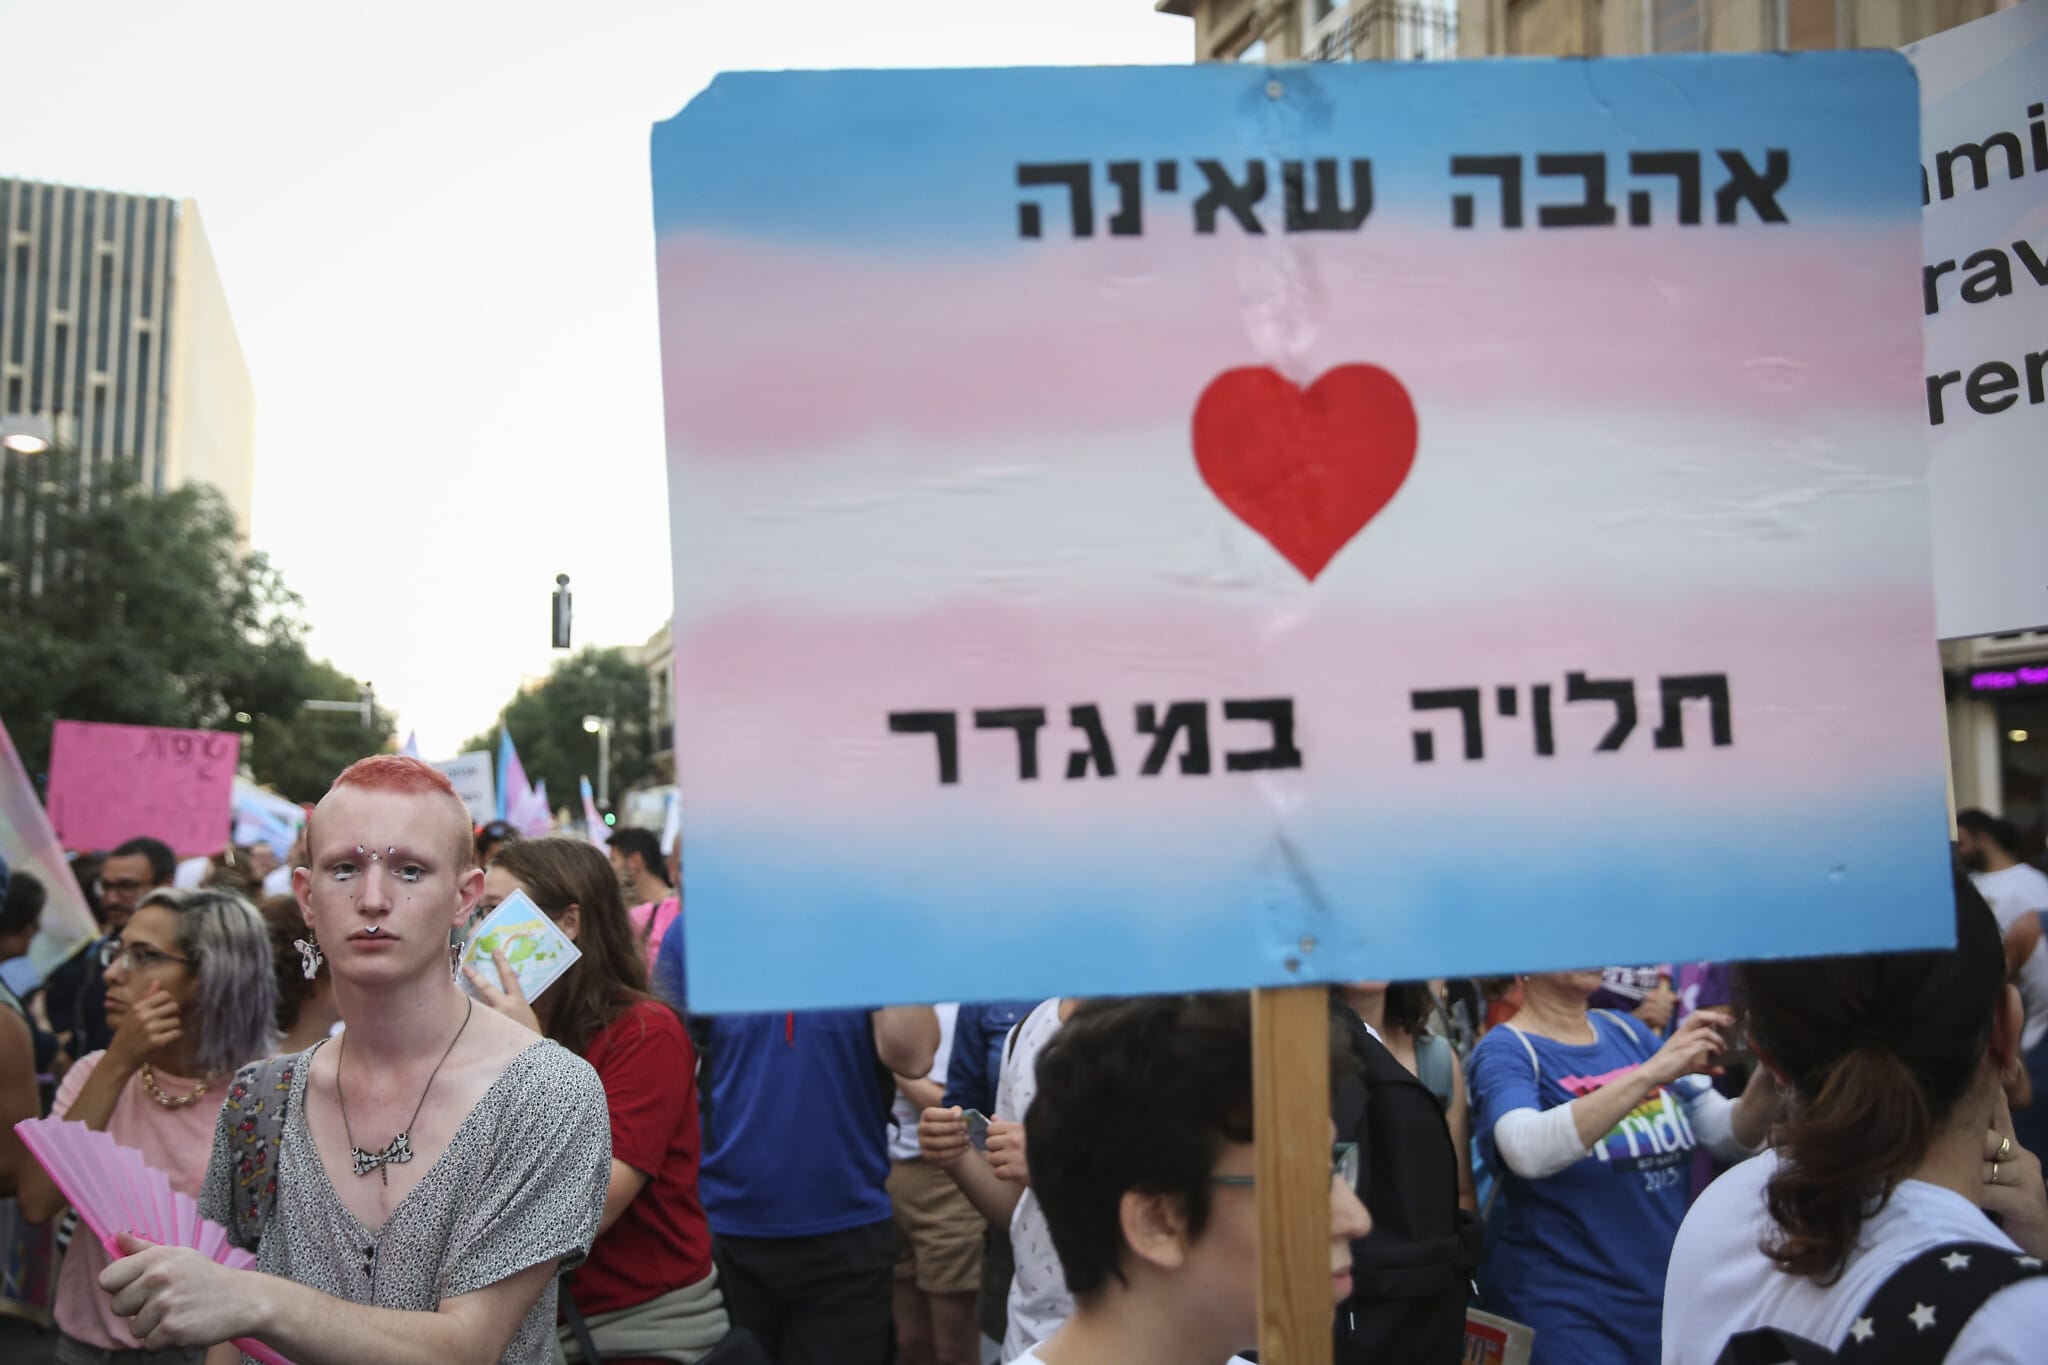 הפגנה של הקהילה הגאה בתל אביב, ארכיון, 2019, למצולמים אין קשר לנאמר (צילום: פלאש 90)